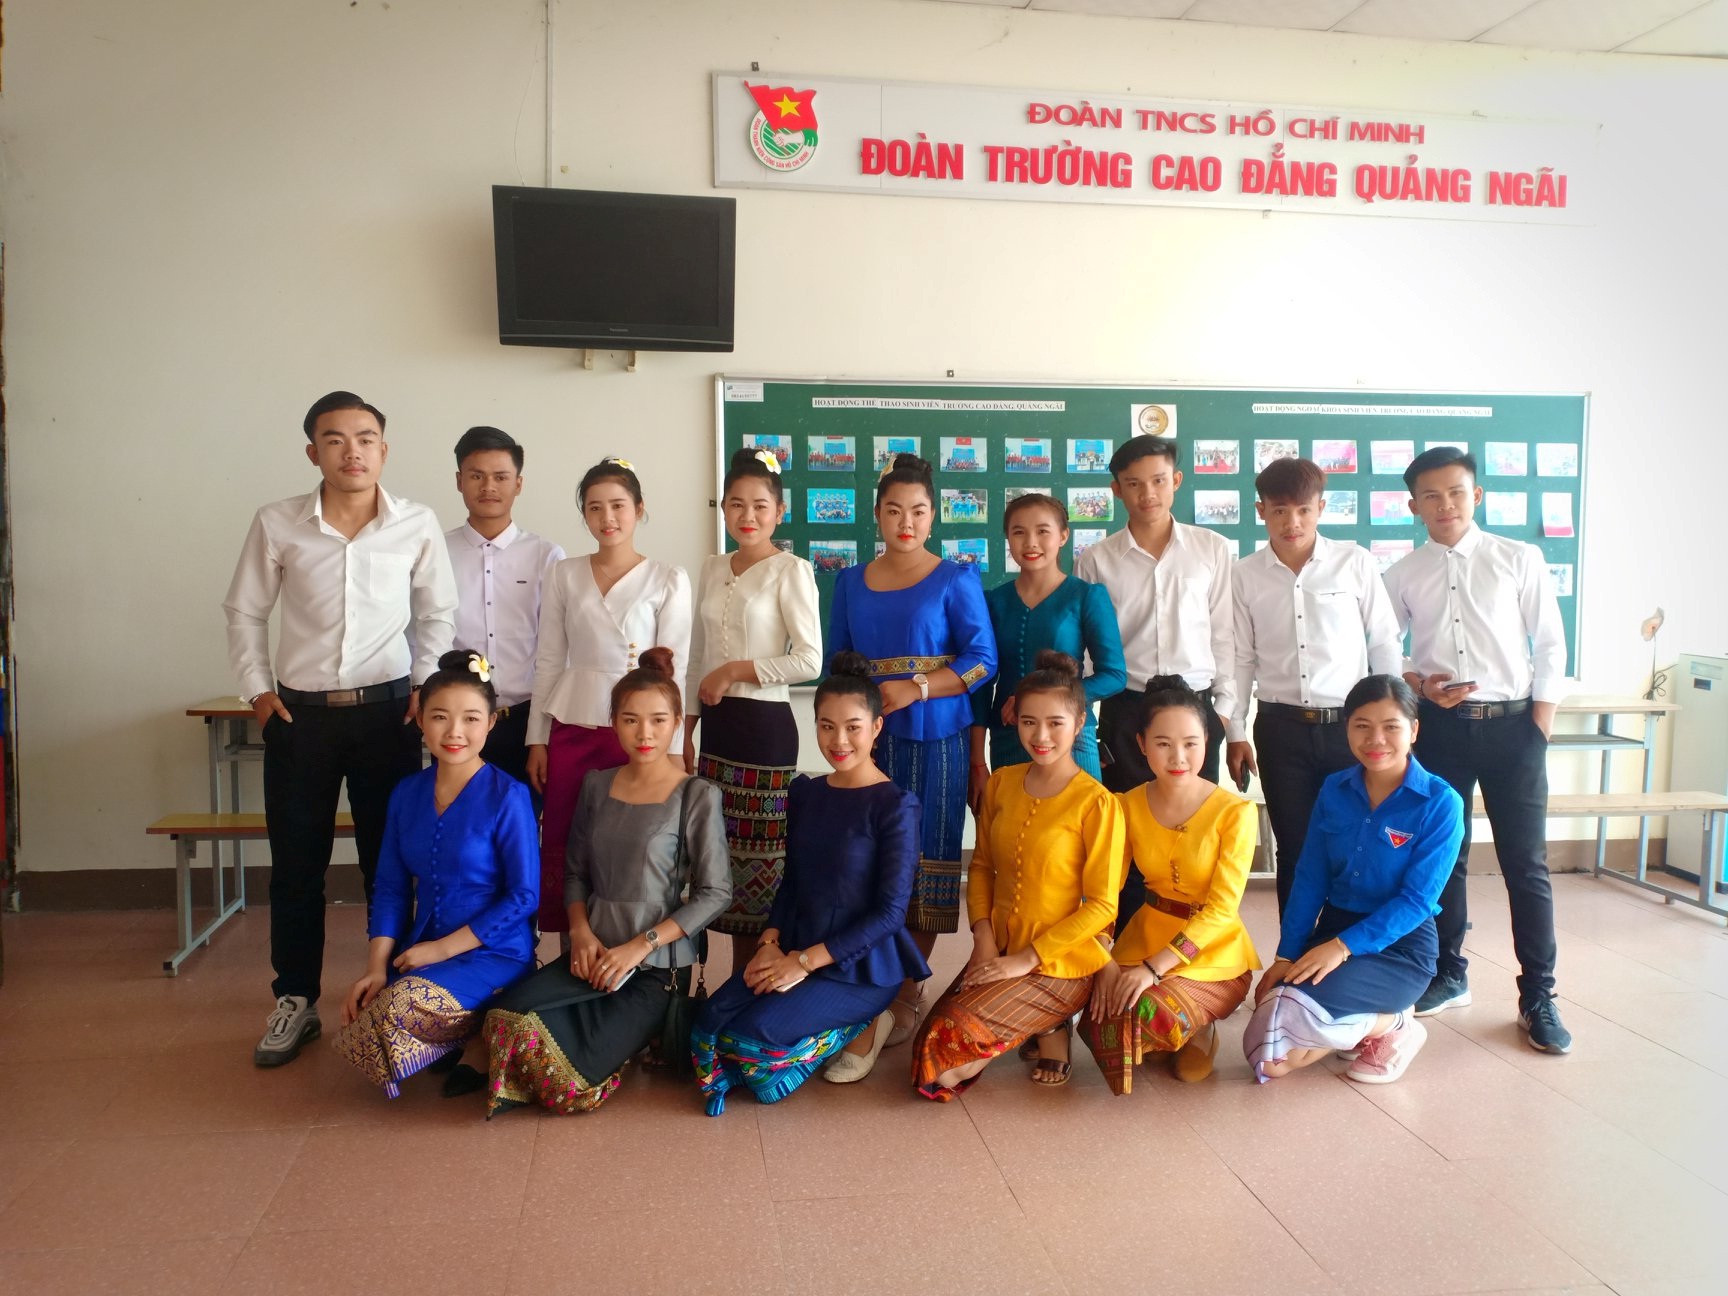 Lưu học sinh nước ngoài học tập ở Việt Nam bị ảnh hưởng bởi dịch Covid-19 sẽ được hỗ trợ